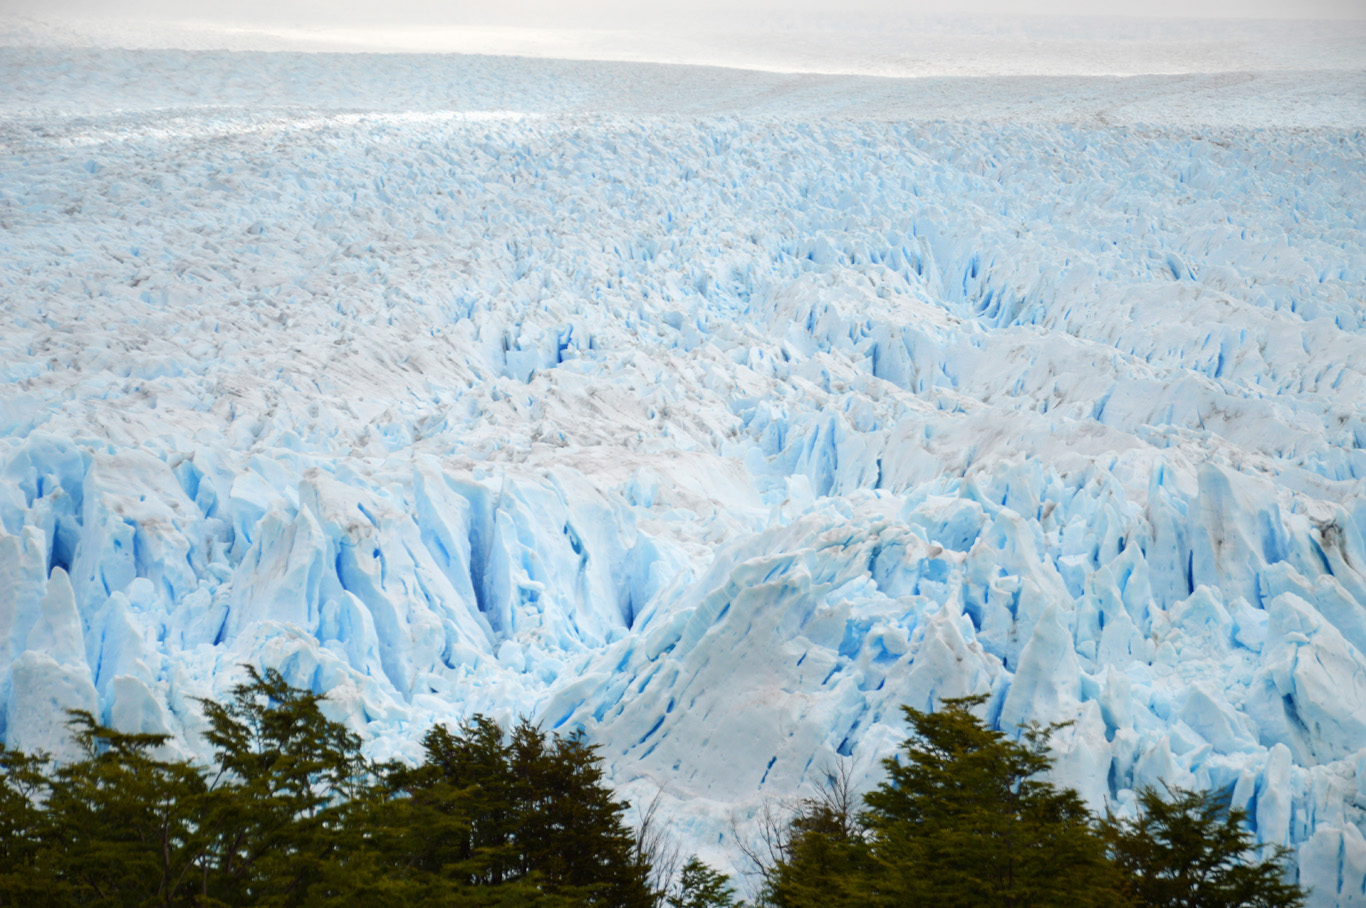   Ice Desert - Perito Moreno     more info   